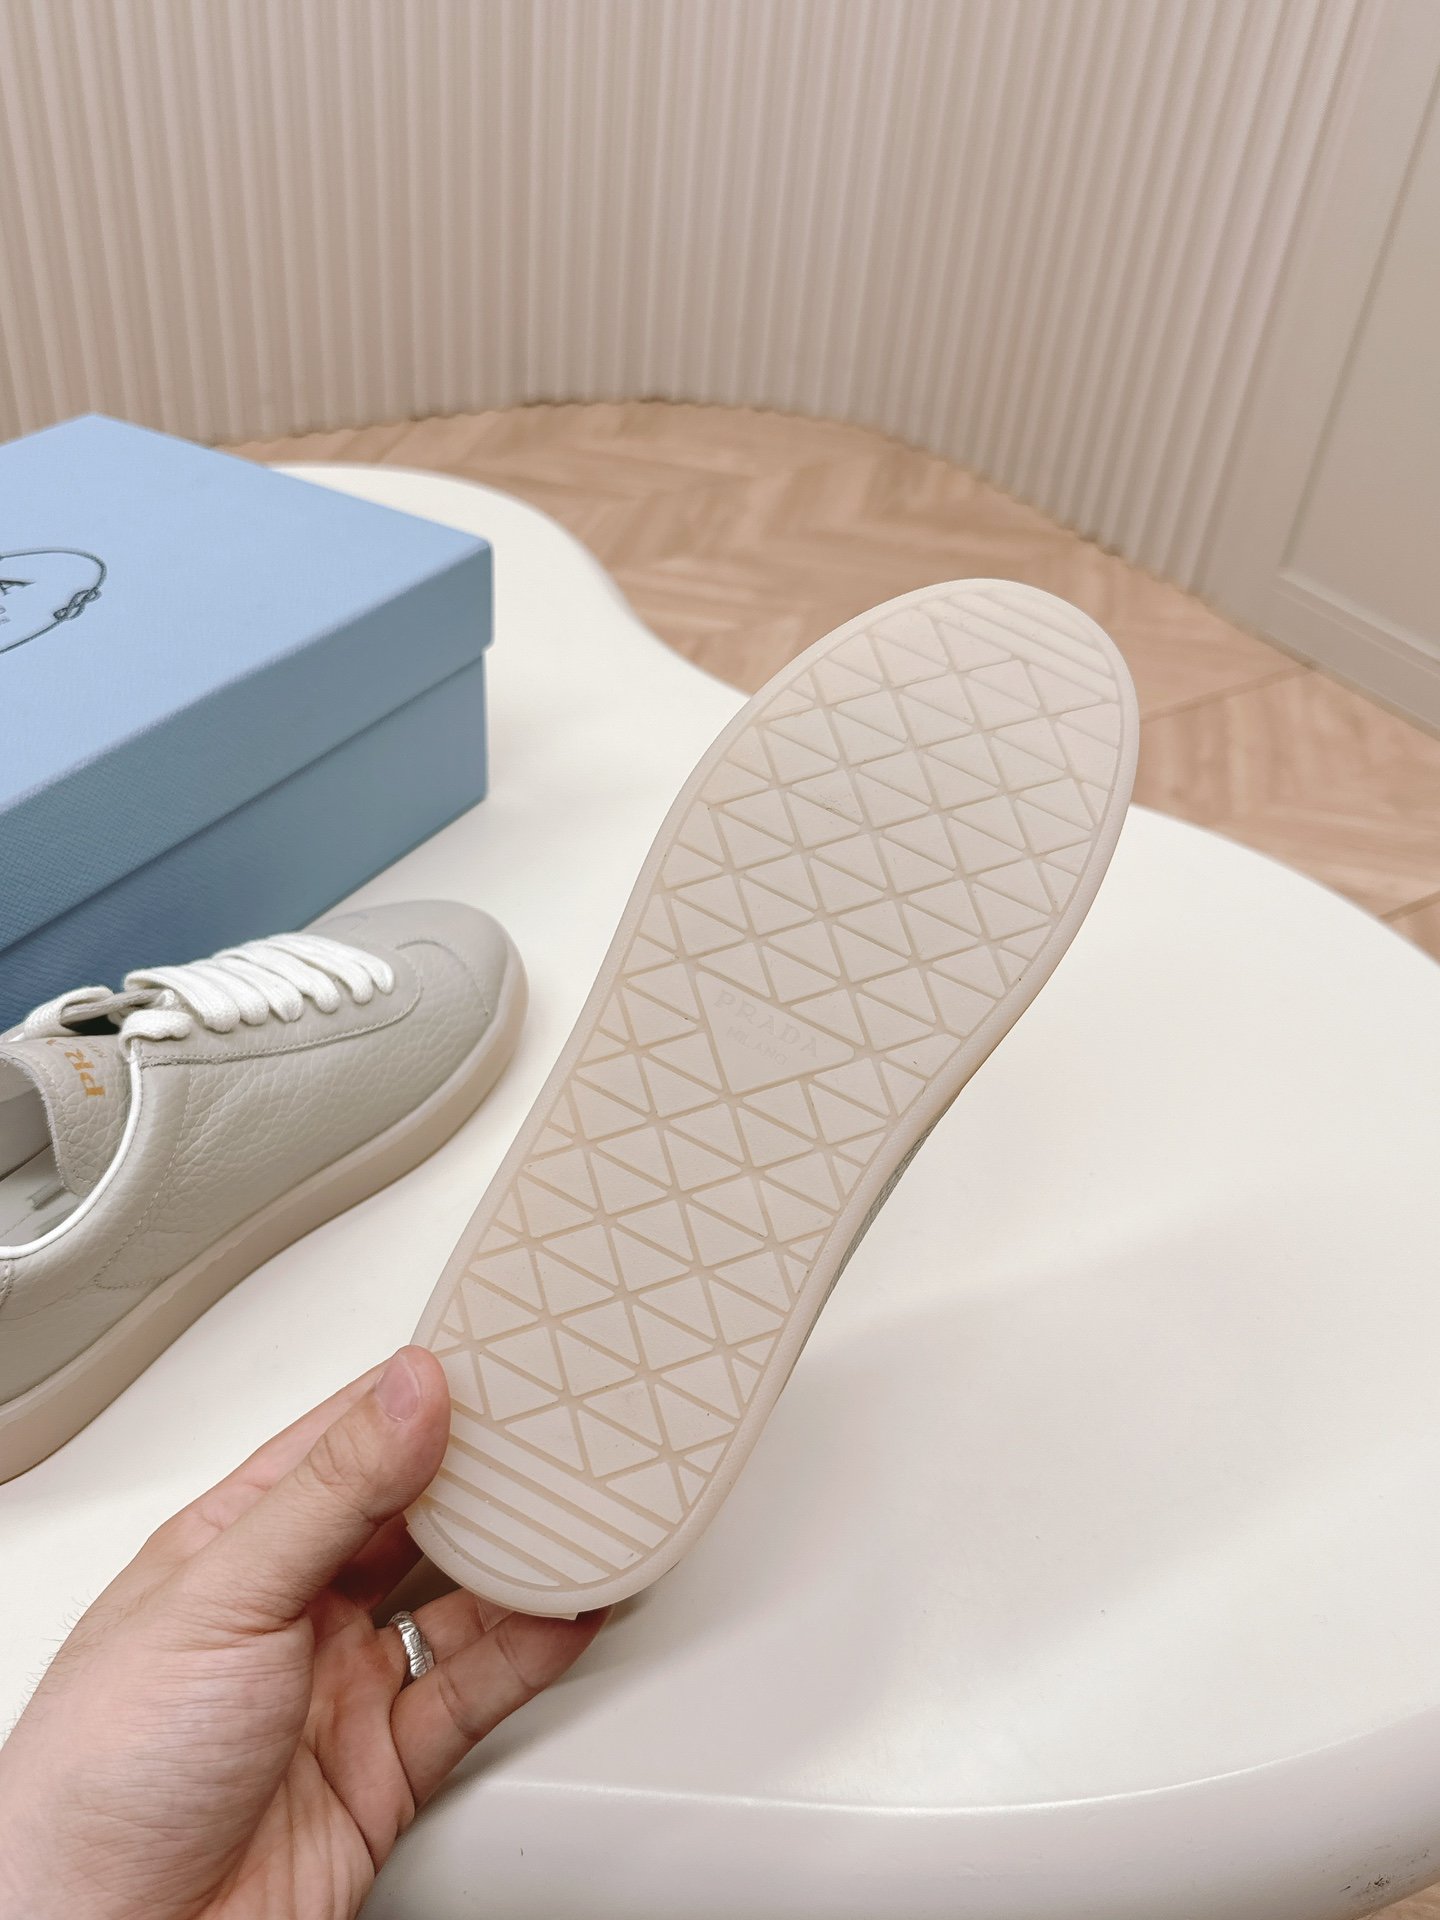 普拉达PRADA2023最新款休闲运动鞋小白鞋演绎都市风尚设计彰显功能性与科技感新颖压花橡胶三角形徽标展